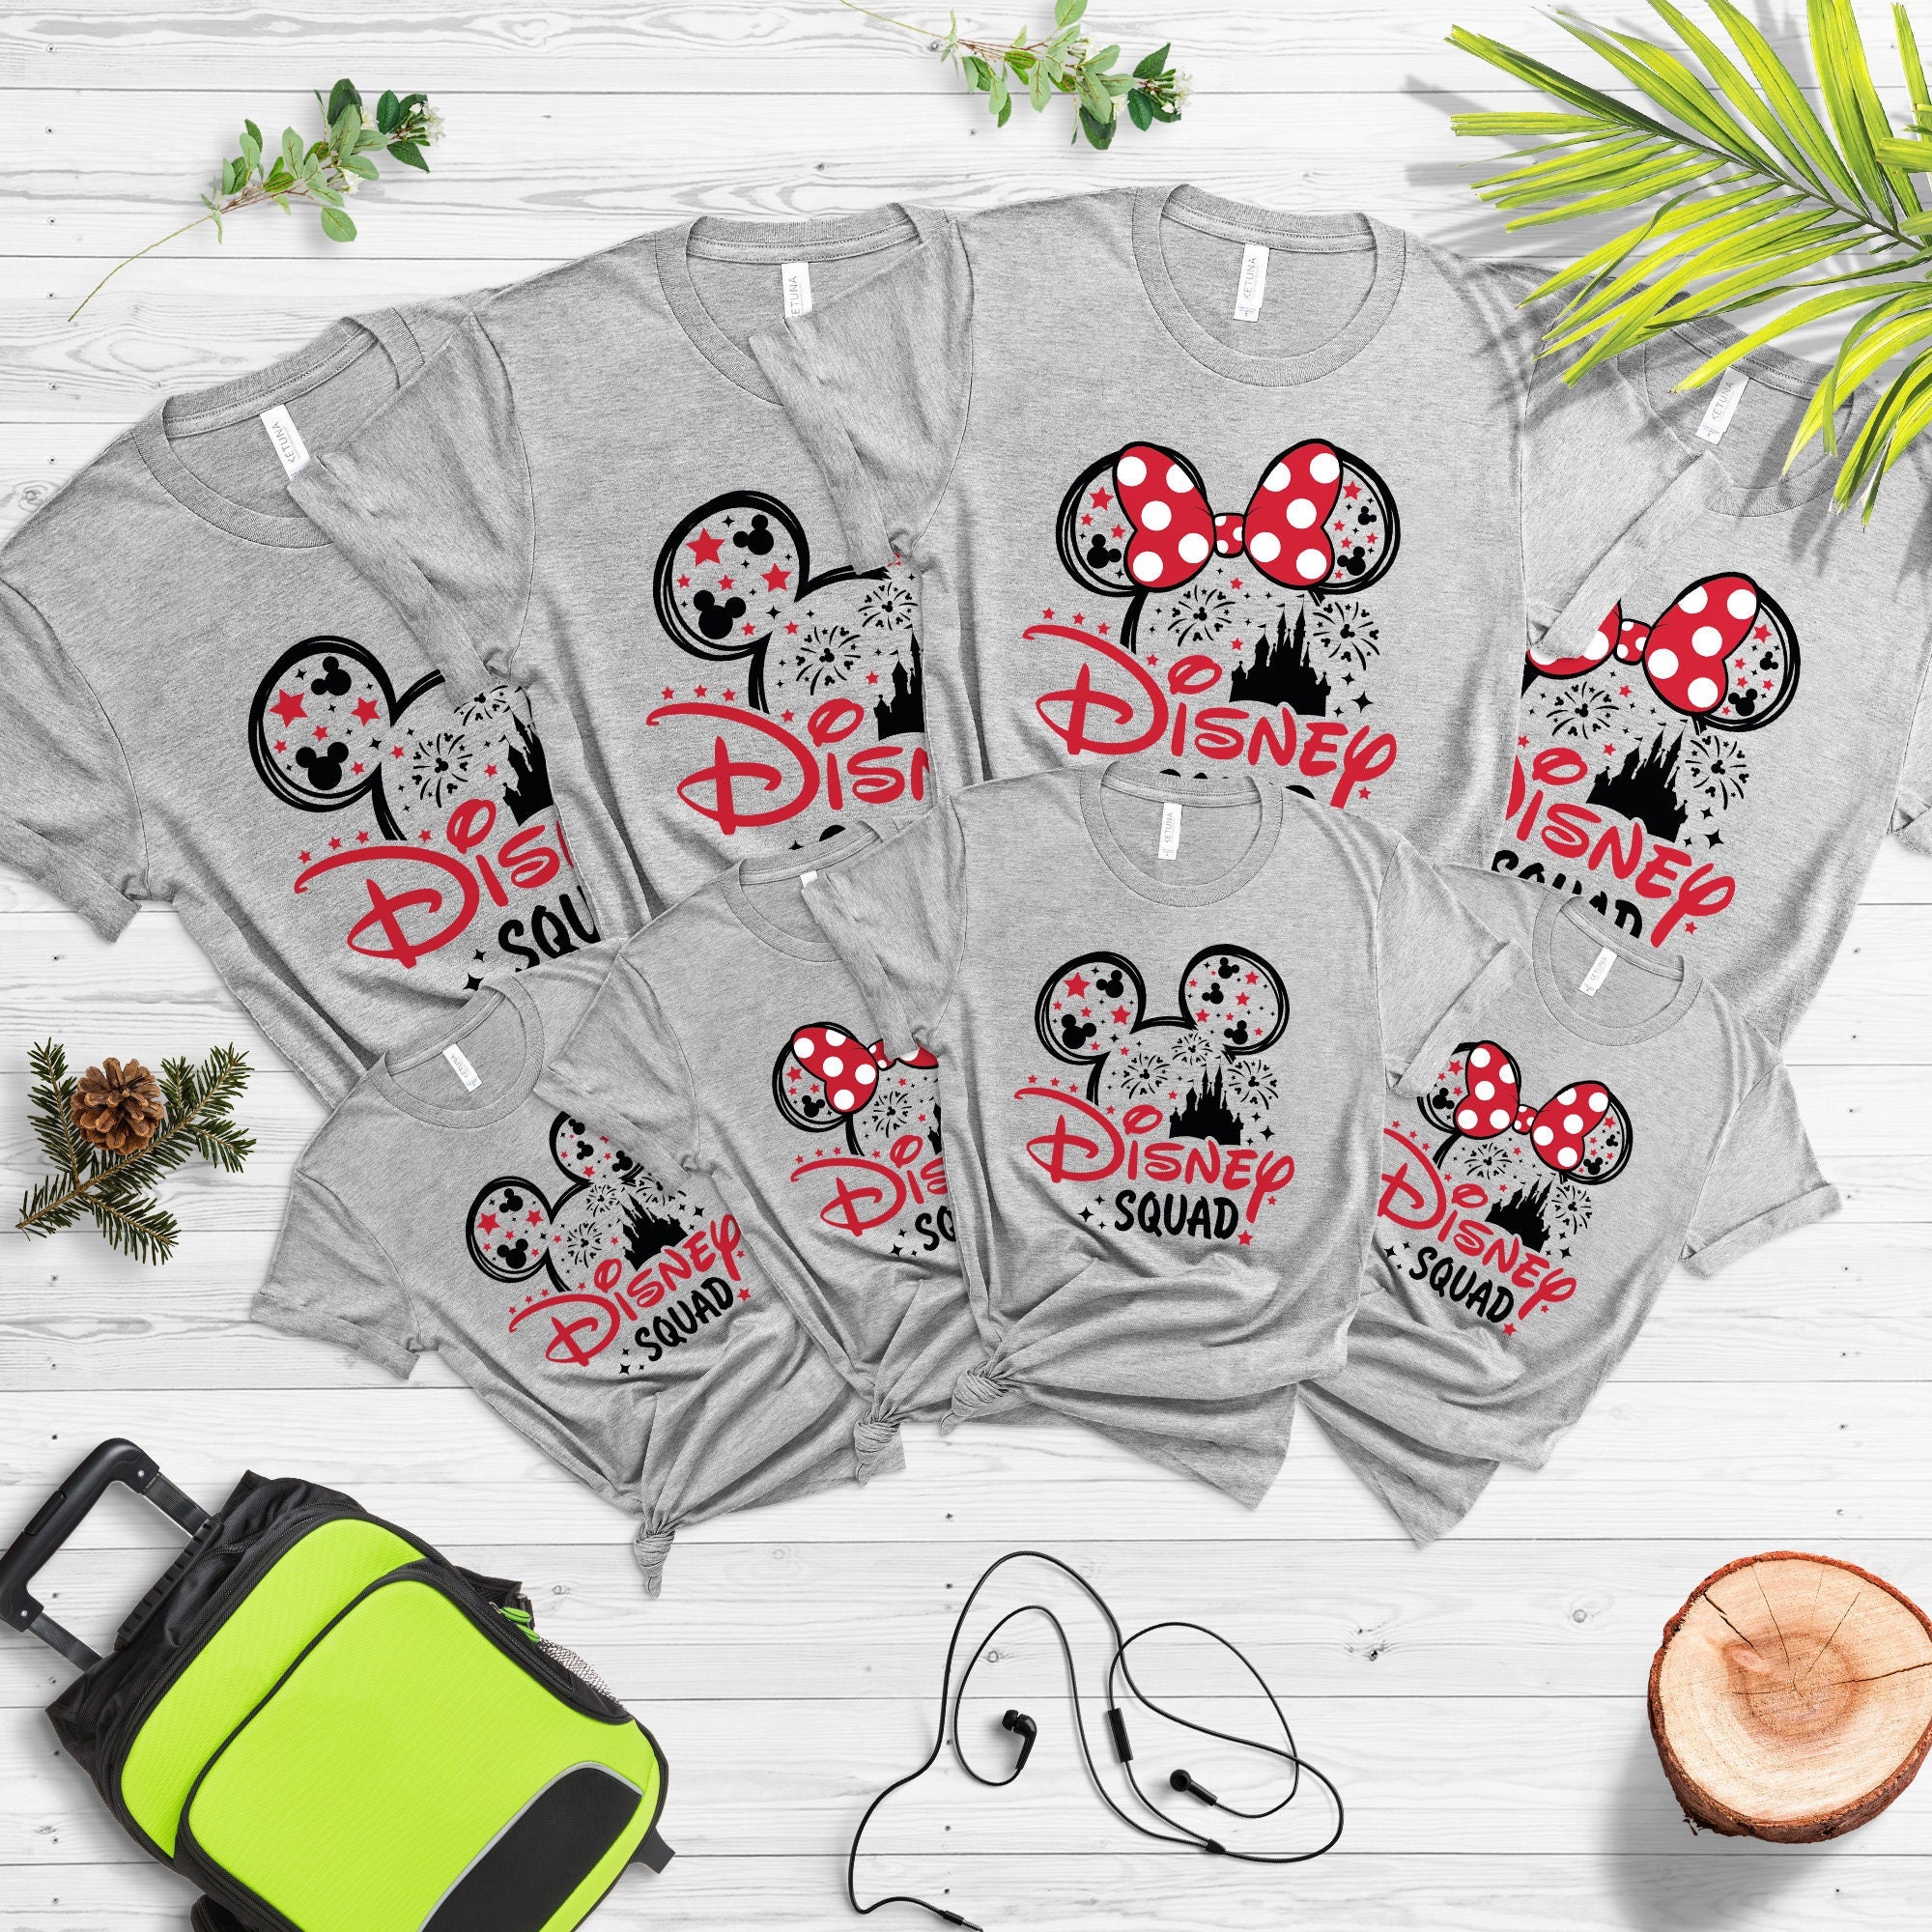 Discover Disney Squad Shirt, Disney Squad Shirt, Disney Trip, Disney Trip Shirt, Disney Group Shirts